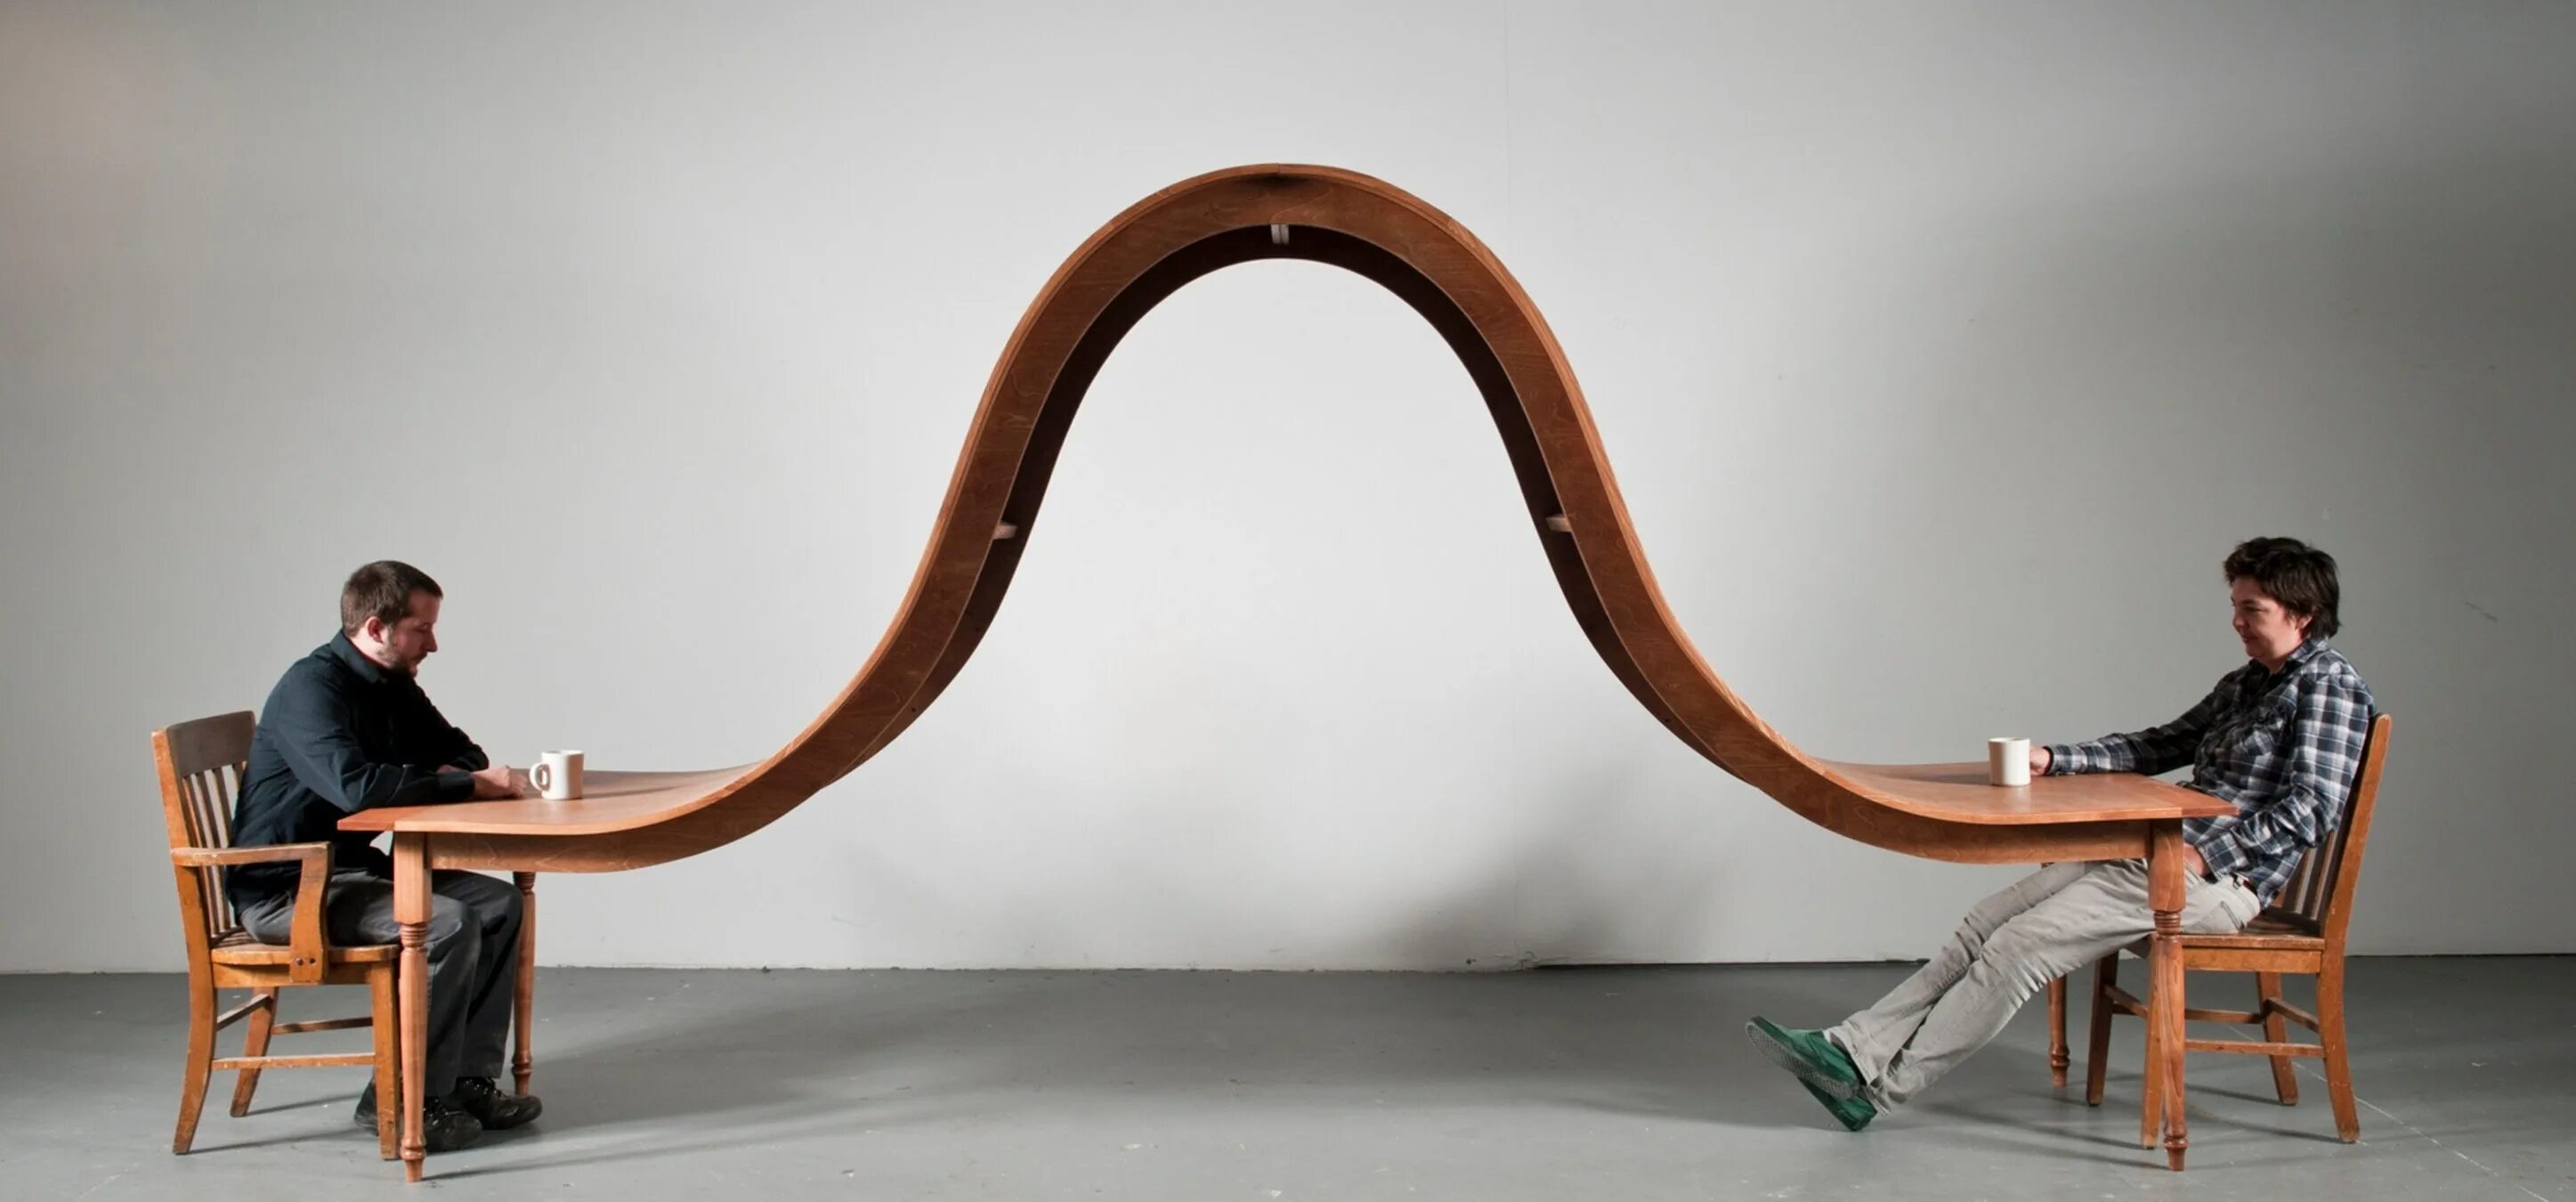 Нестандартный сайт. Скульптуры Майкла бейтса столы. Необычная дизайнерская мебель. Необычные дизайнерские решения.